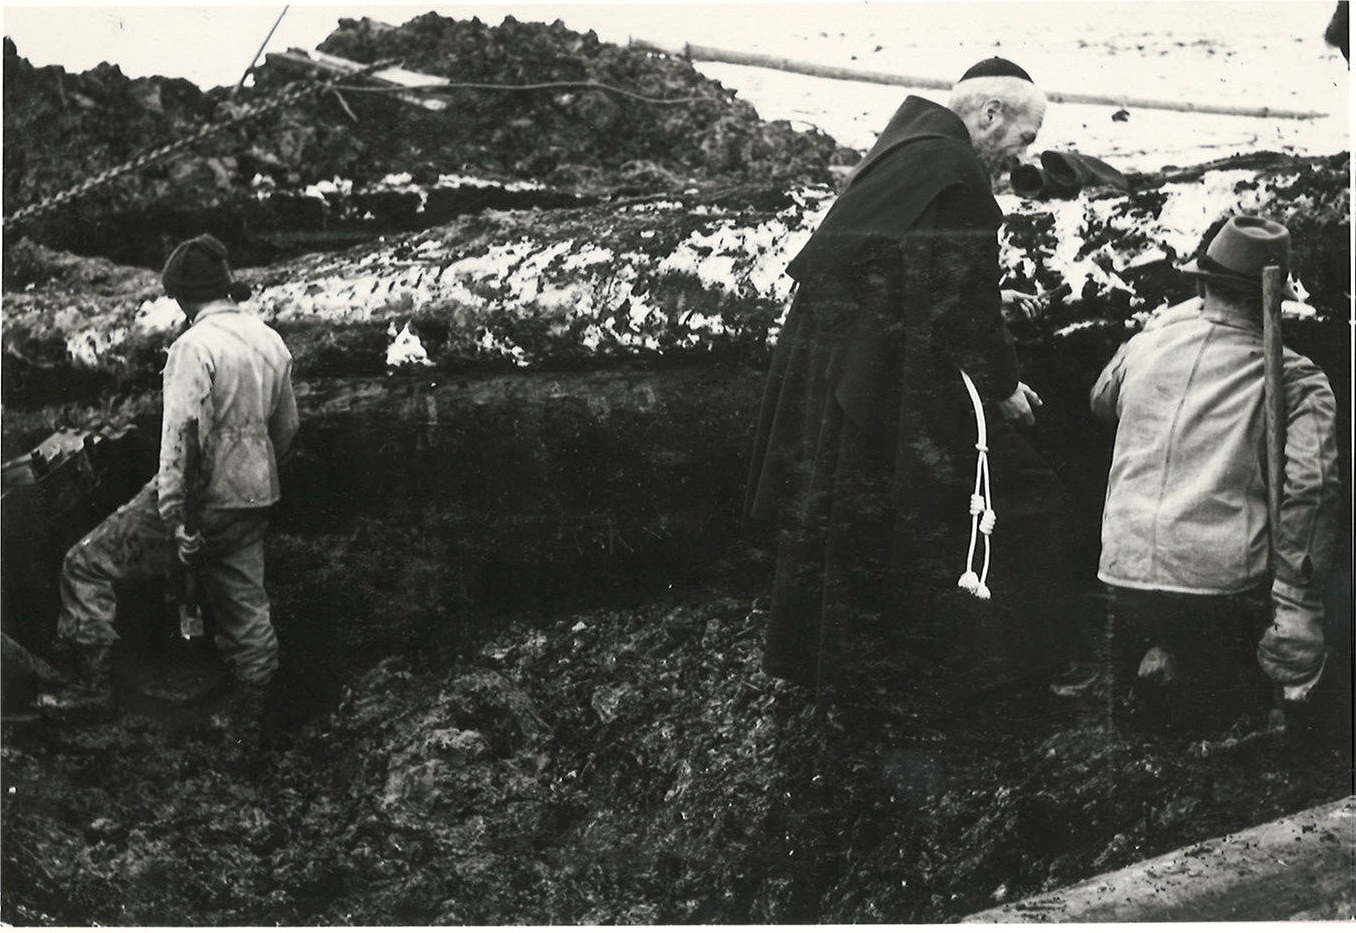 Pater Aurelian Rosshardt, Lehrer am Kollegium St. Fidelis in Stans, bei der Entnahme von Bodenproben